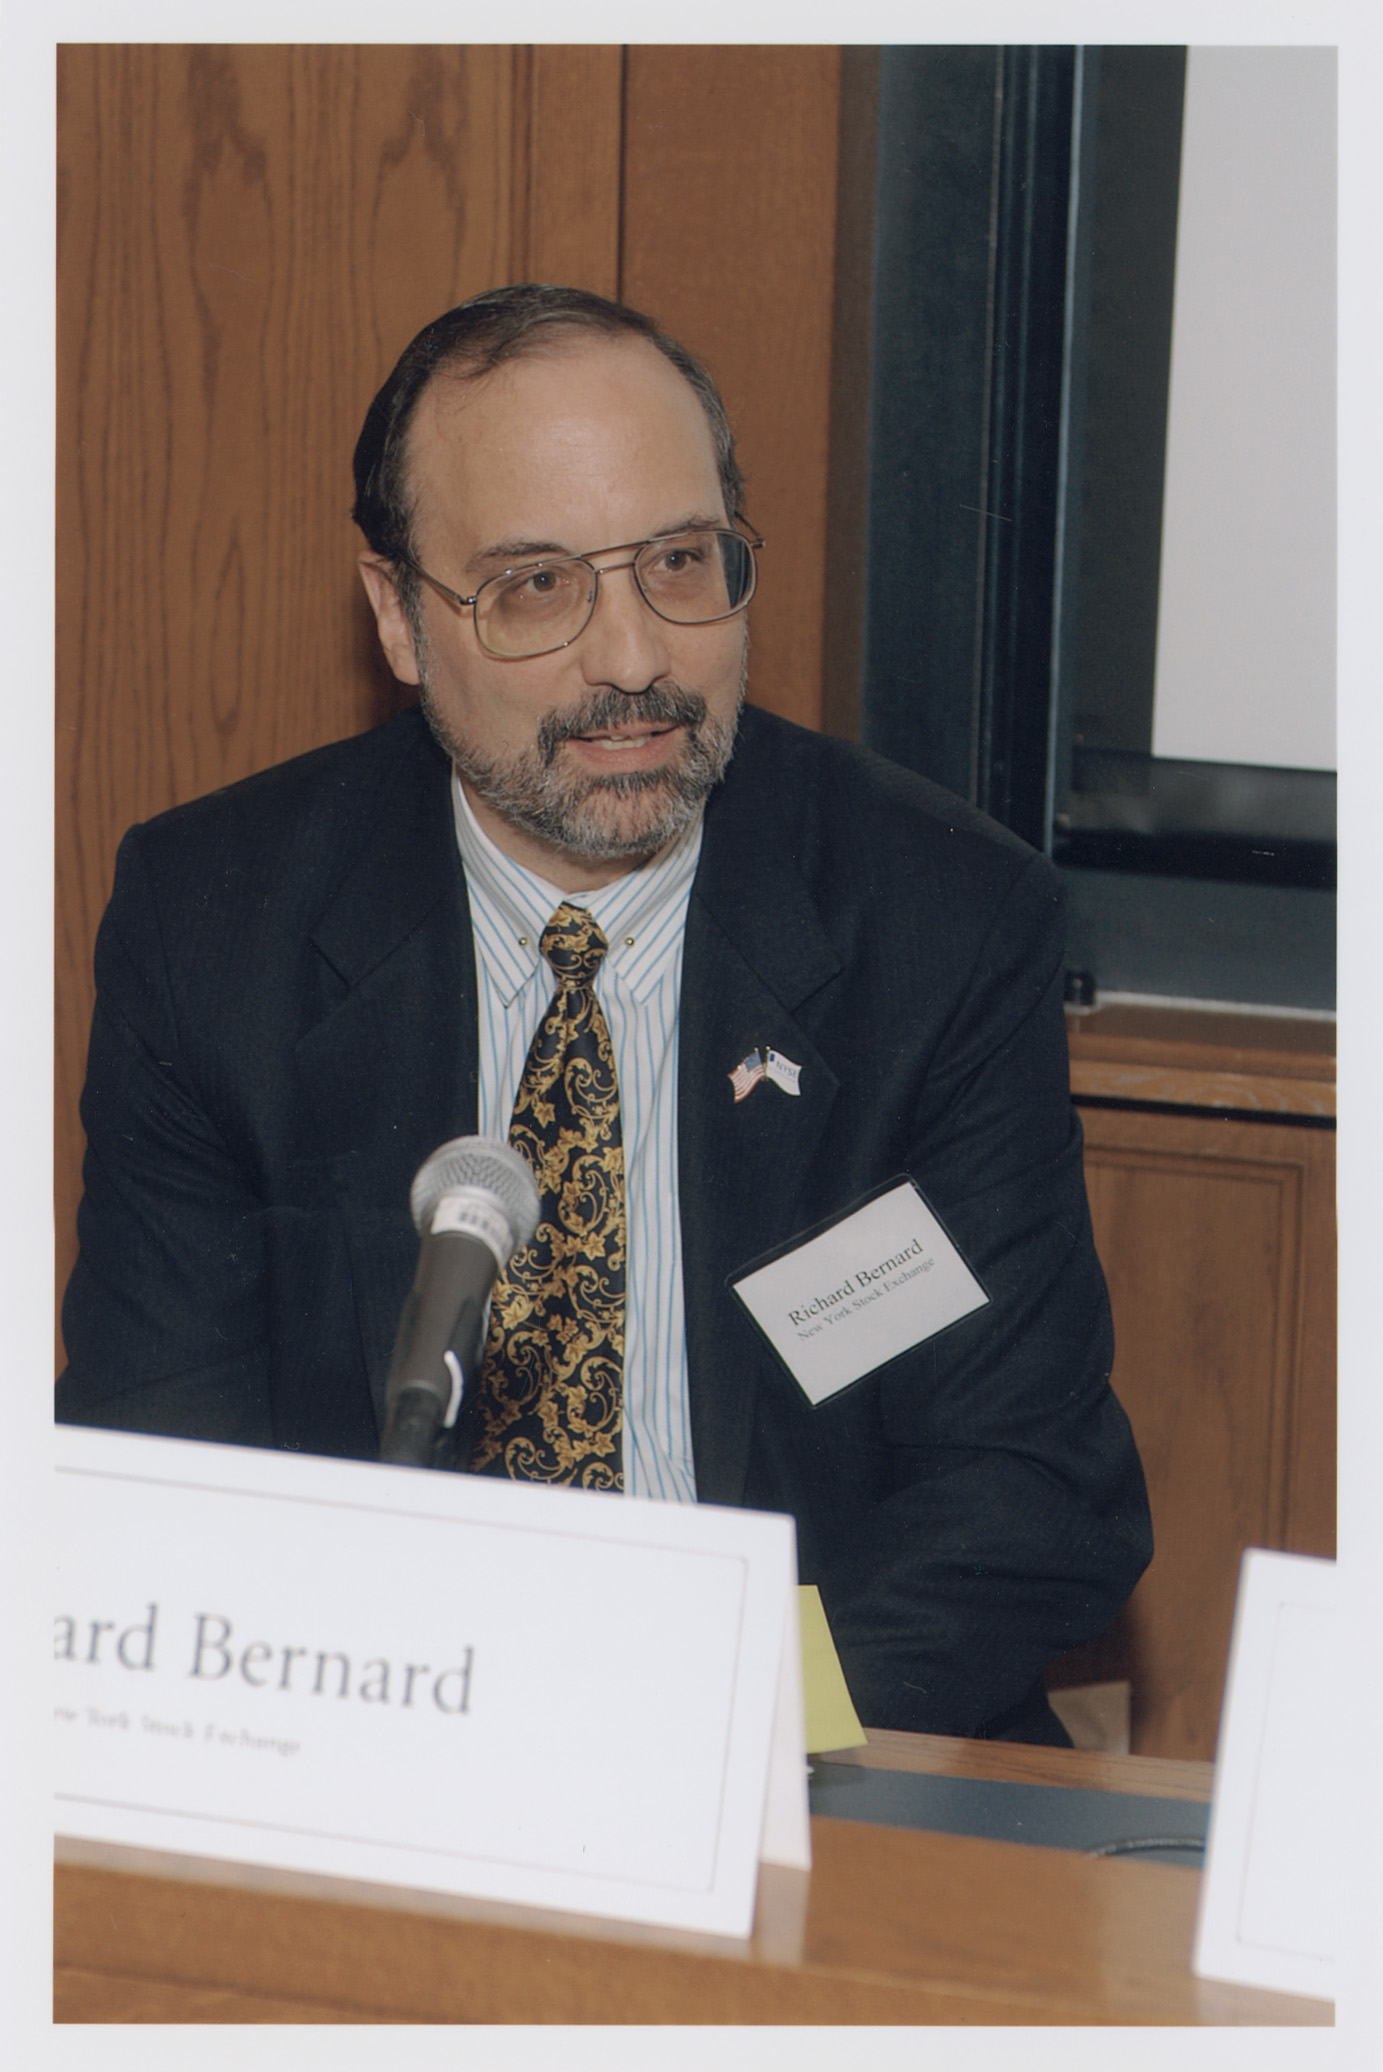 Richard Bernard